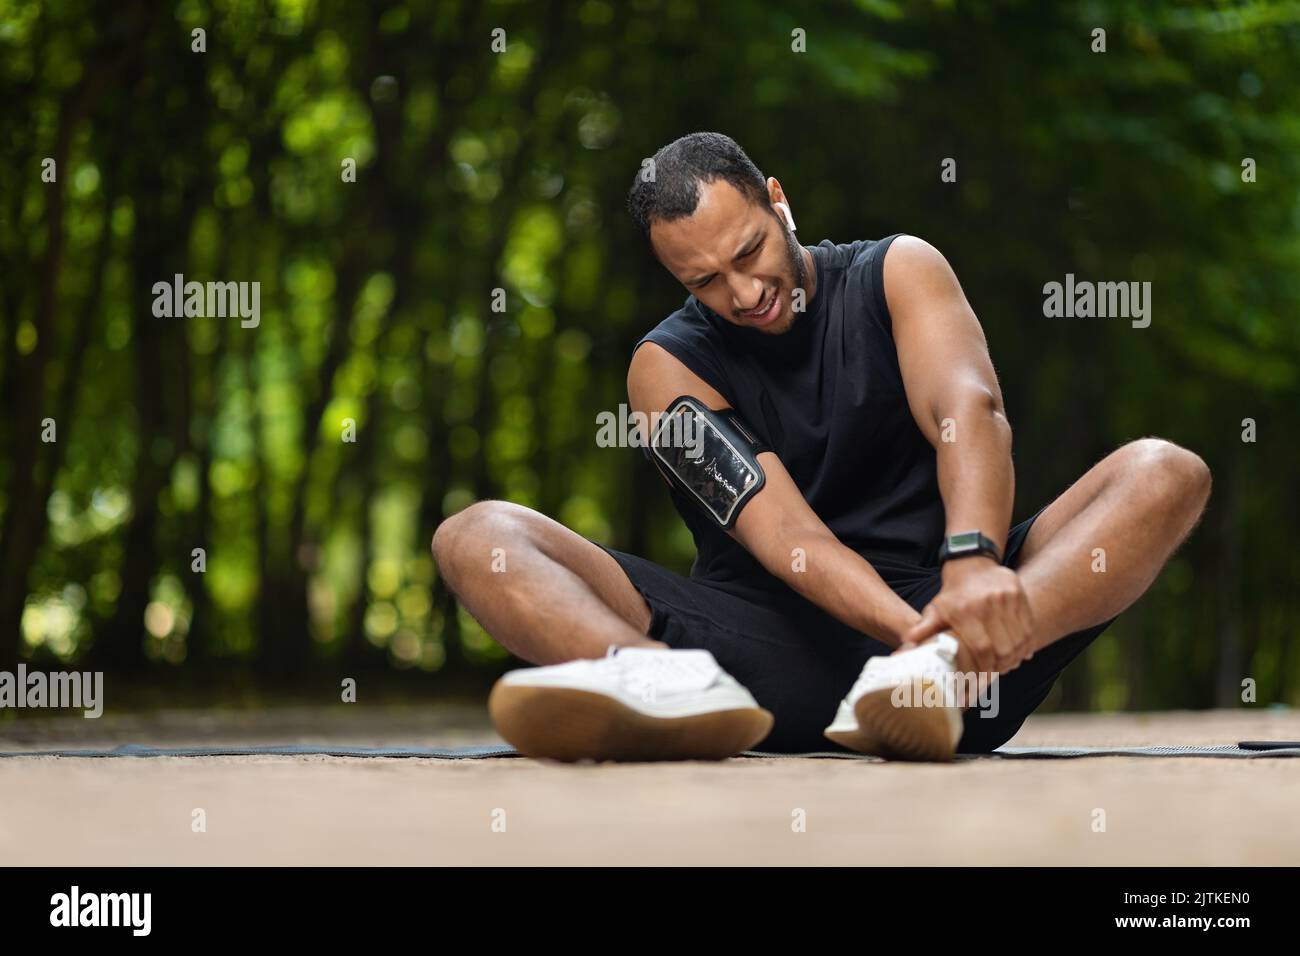 Sportif afro-américain dans la douleur touchant sa cheville, copier l'espace Banque D'Images